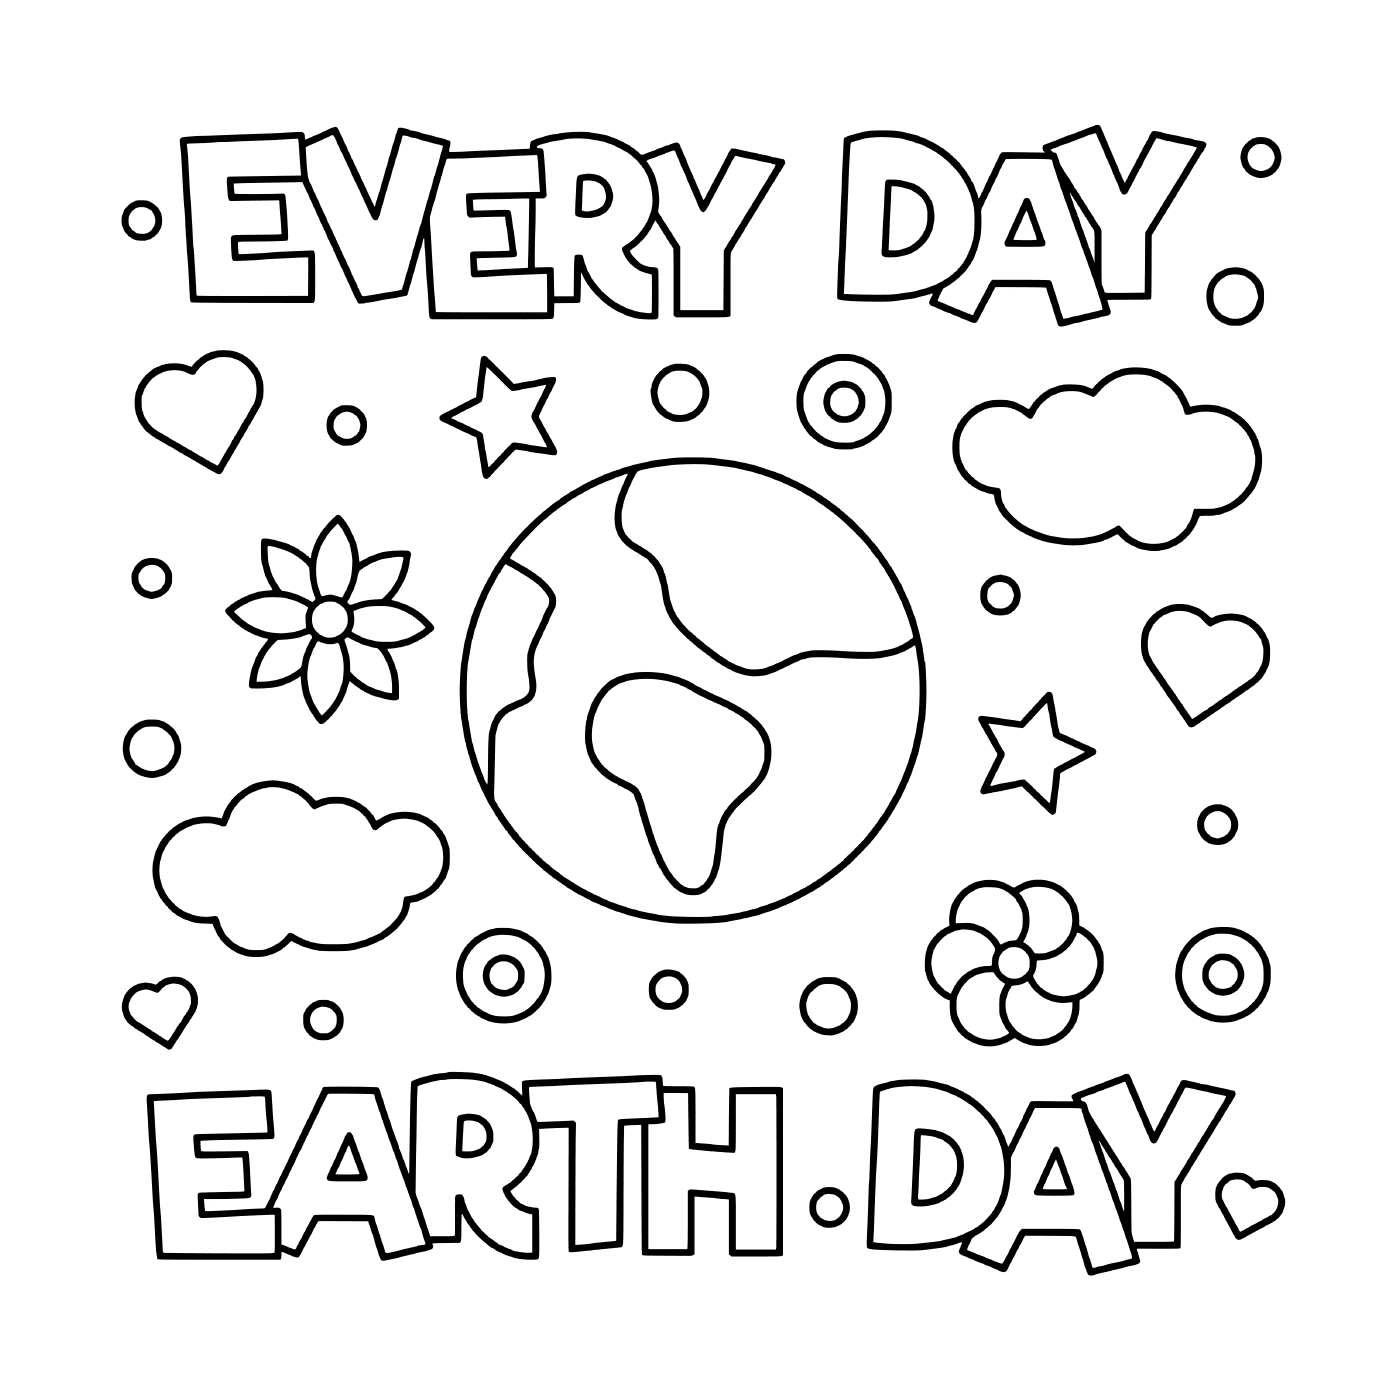  Dia da Terra: Todos os dias 